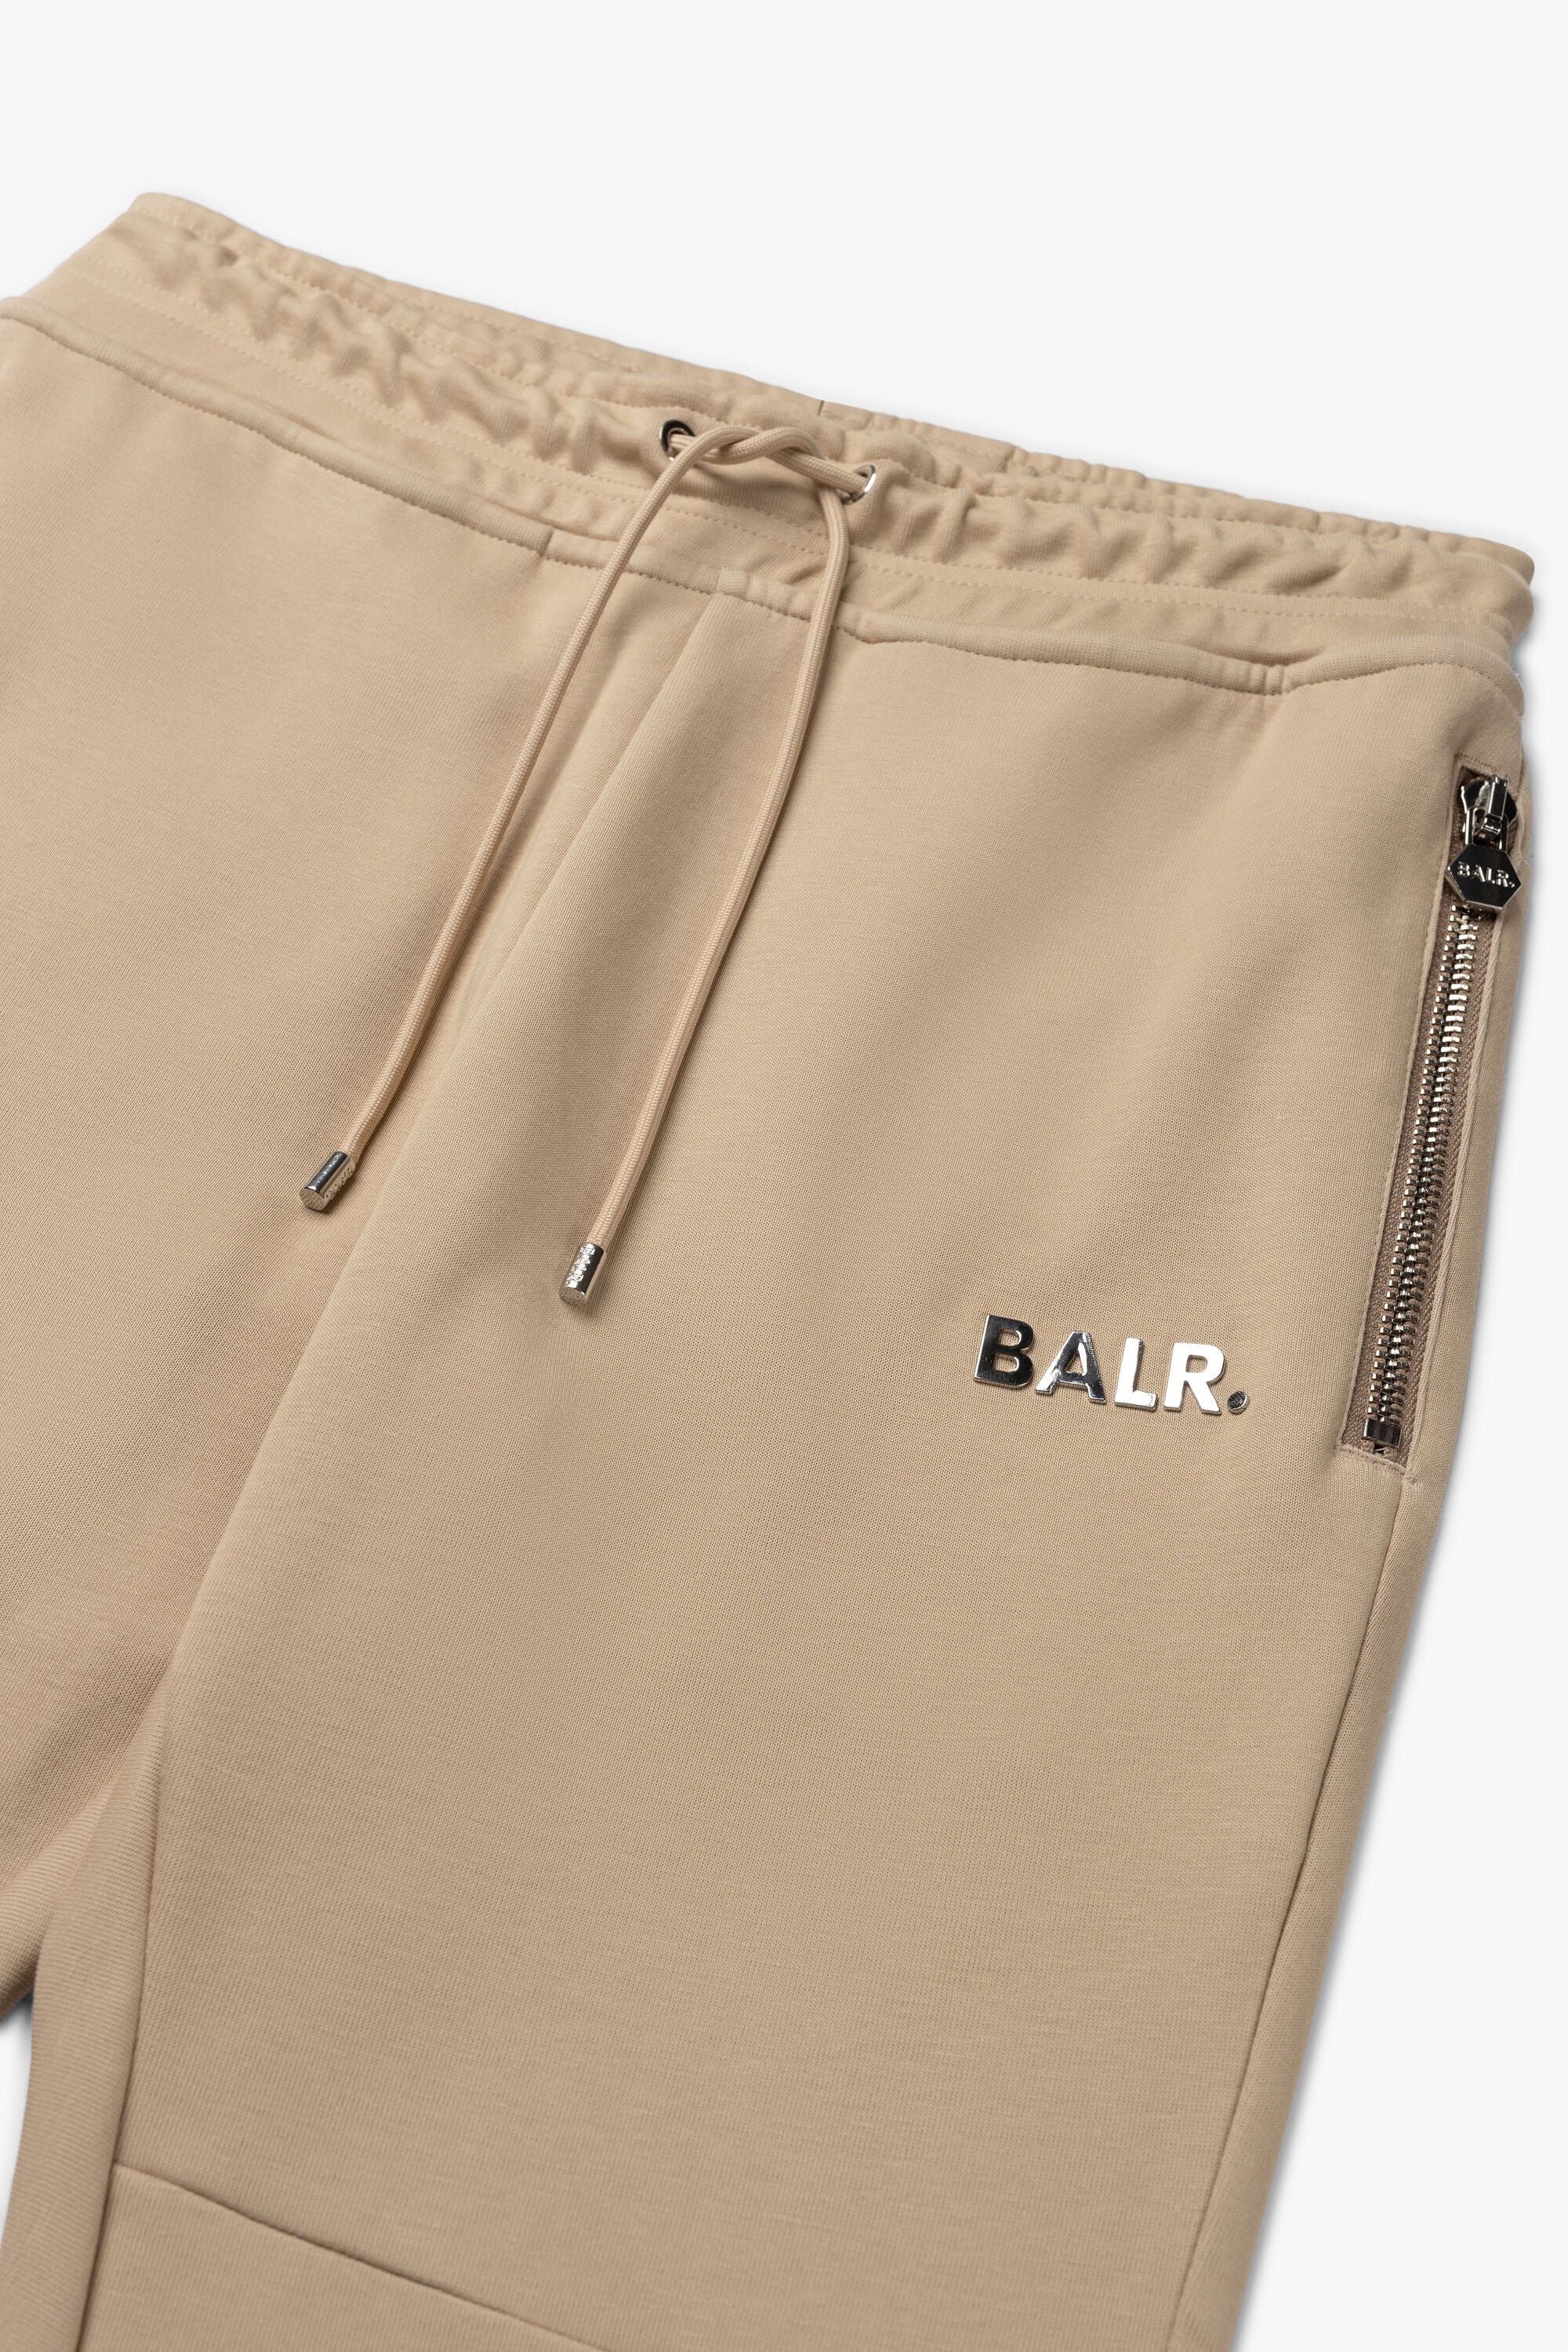 Q-Series Slim Classic Sweatpants Irish Cream – BALR.